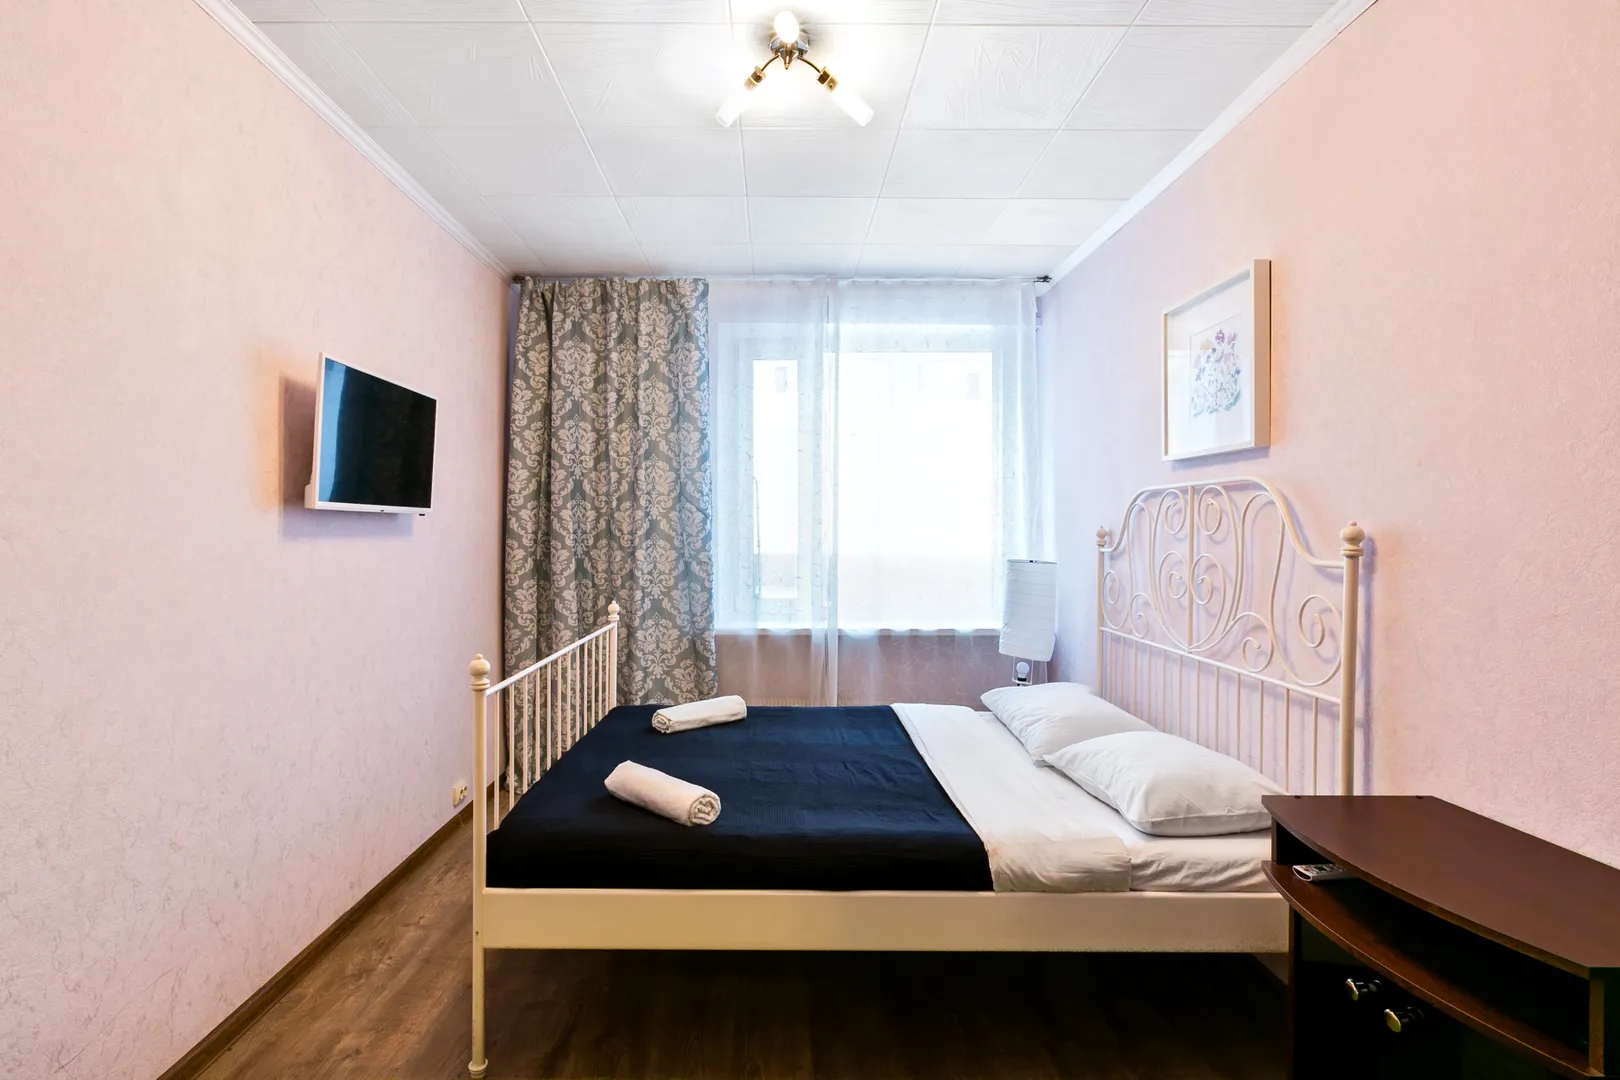 Спальня: крепкая железная кровать с чистым матрасом и застеленным бельем, ЖК-телевизор, плотные шторы и мягкий ковер.